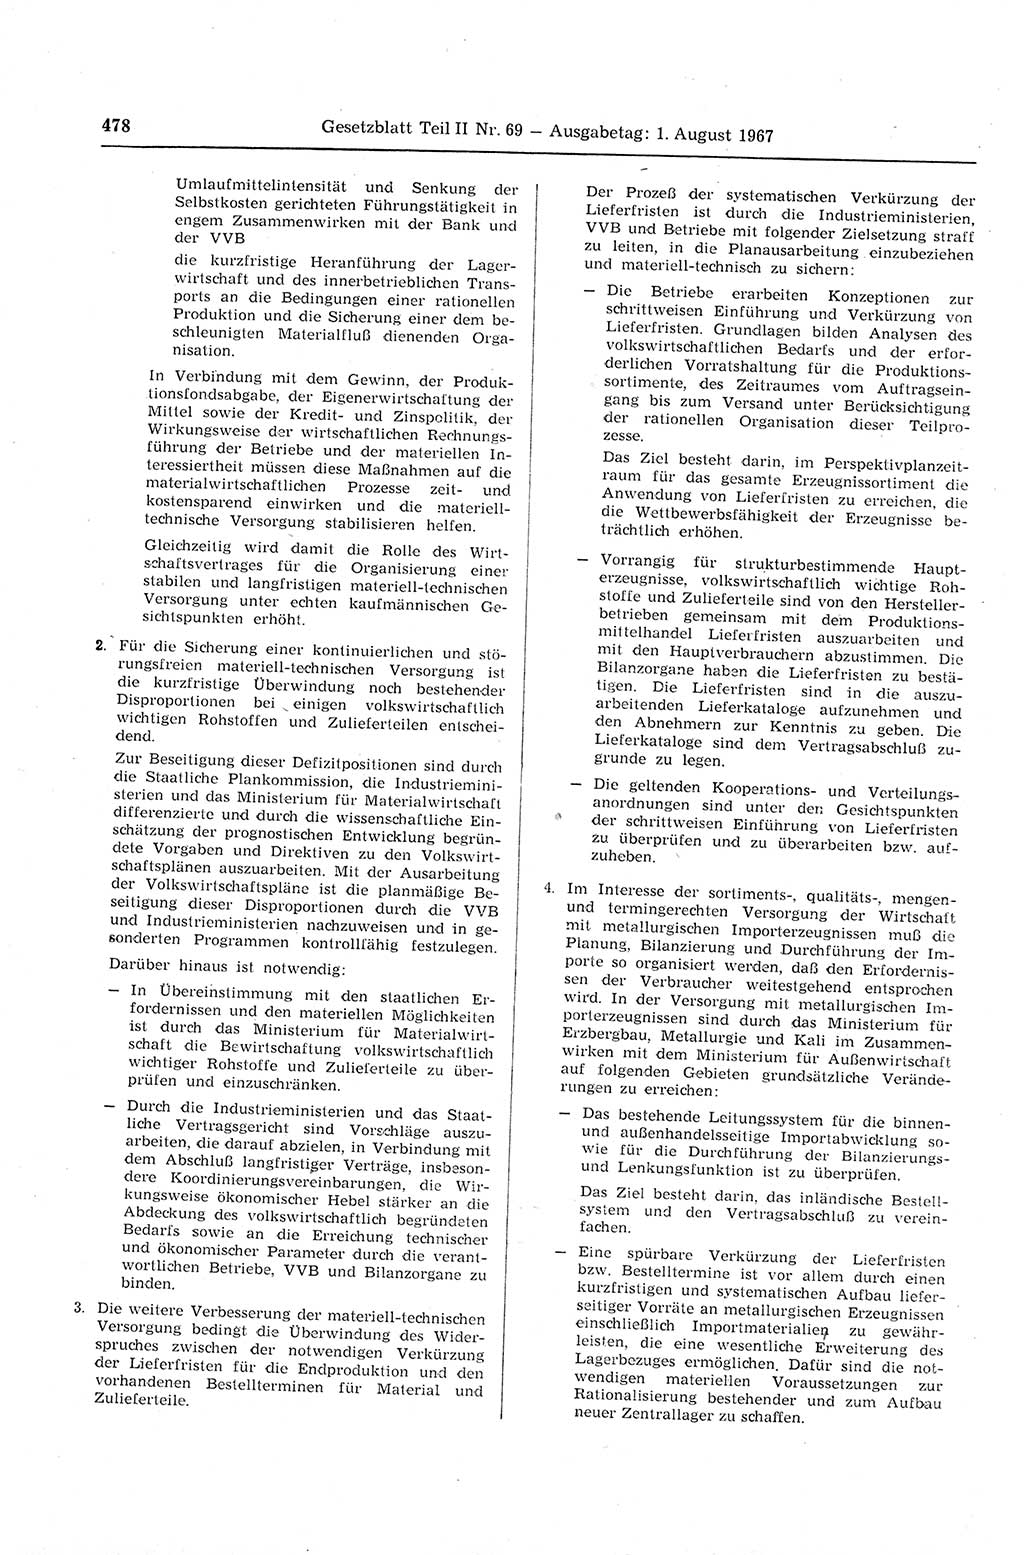 Gesetzblatt (GBl.) der Deutschen Demokratischen Republik (DDR) Teil ⅠⅠ 1967, Seite 478 (GBl. DDR ⅠⅠ 1967, S. 478)